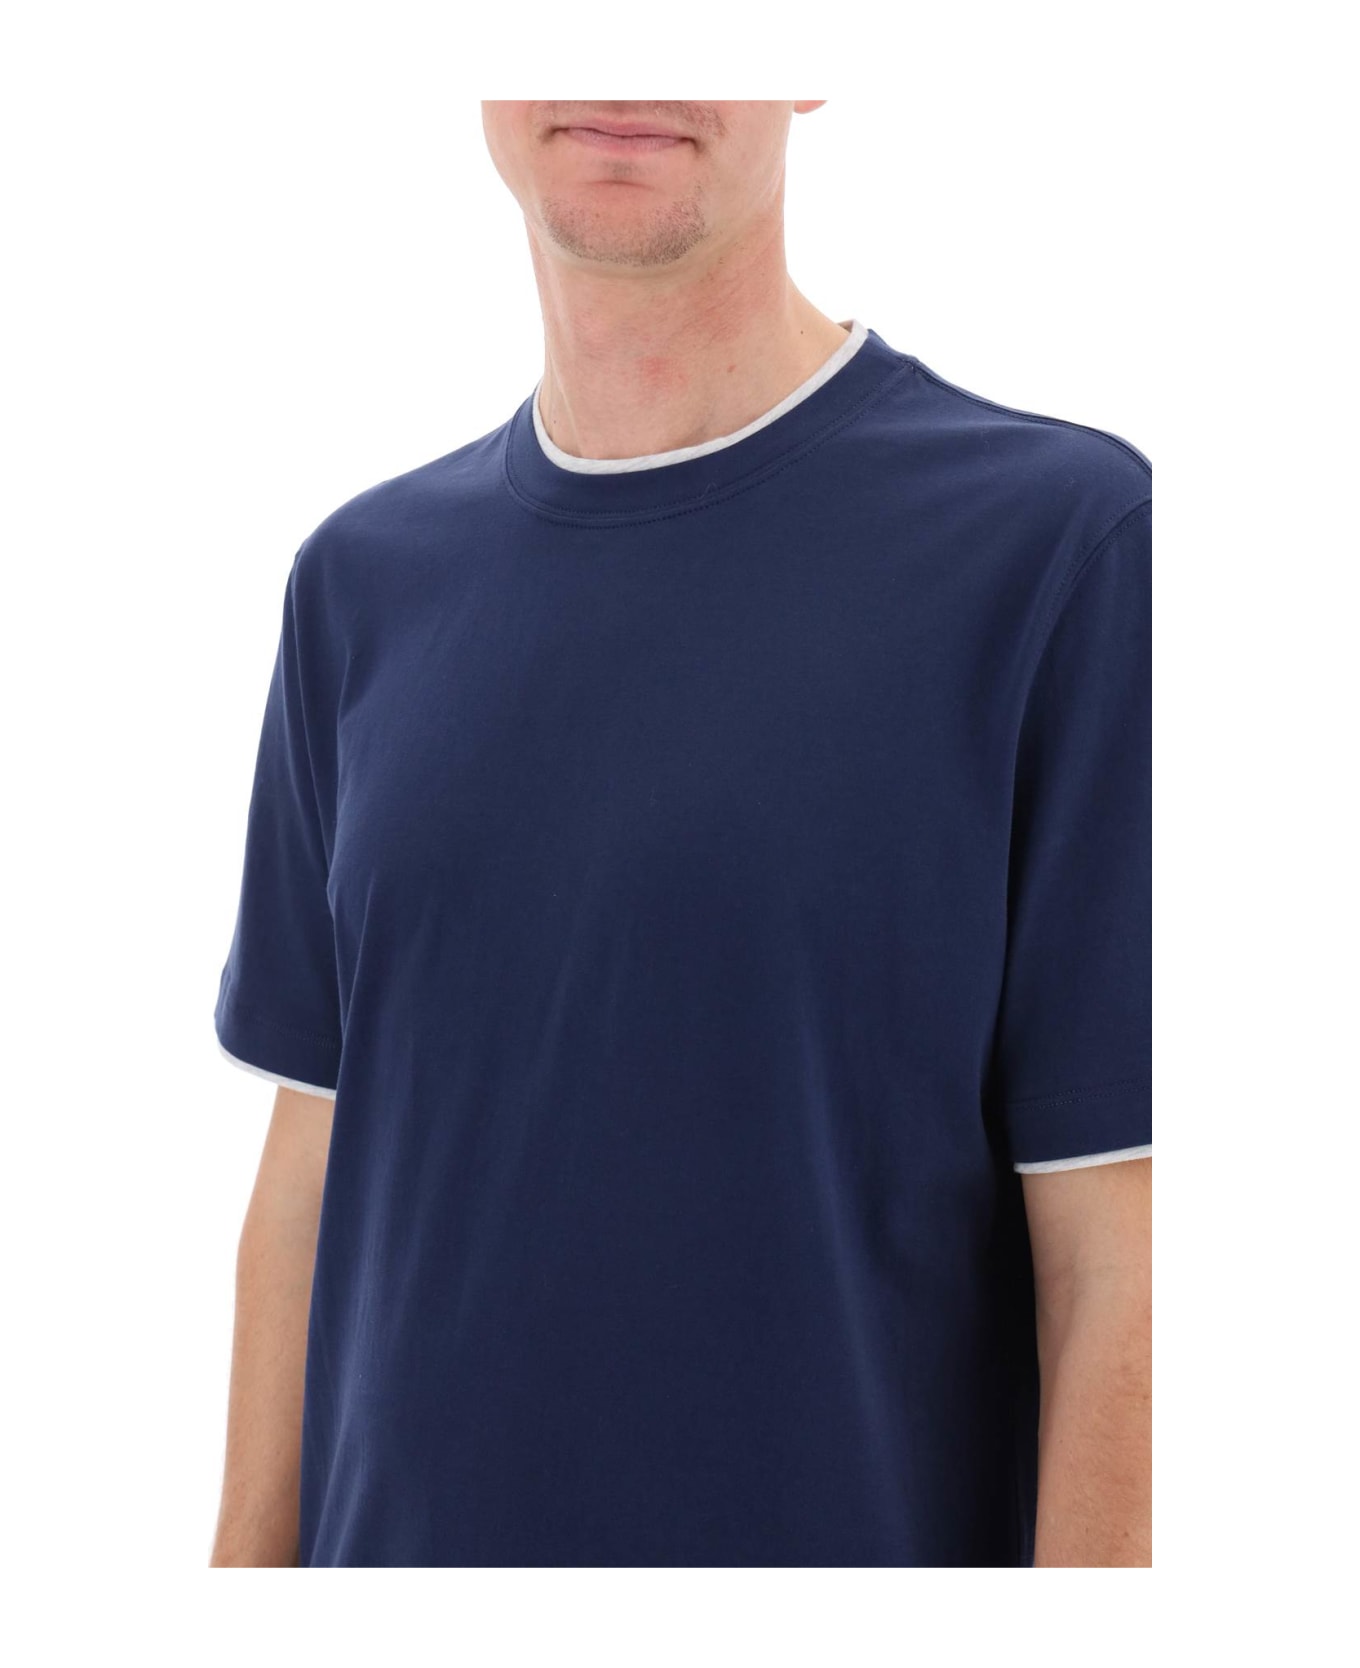 Brunello Cucinelli Layered-effect Crewneck T-shirt - Blu Prussia+grigio Chiaro